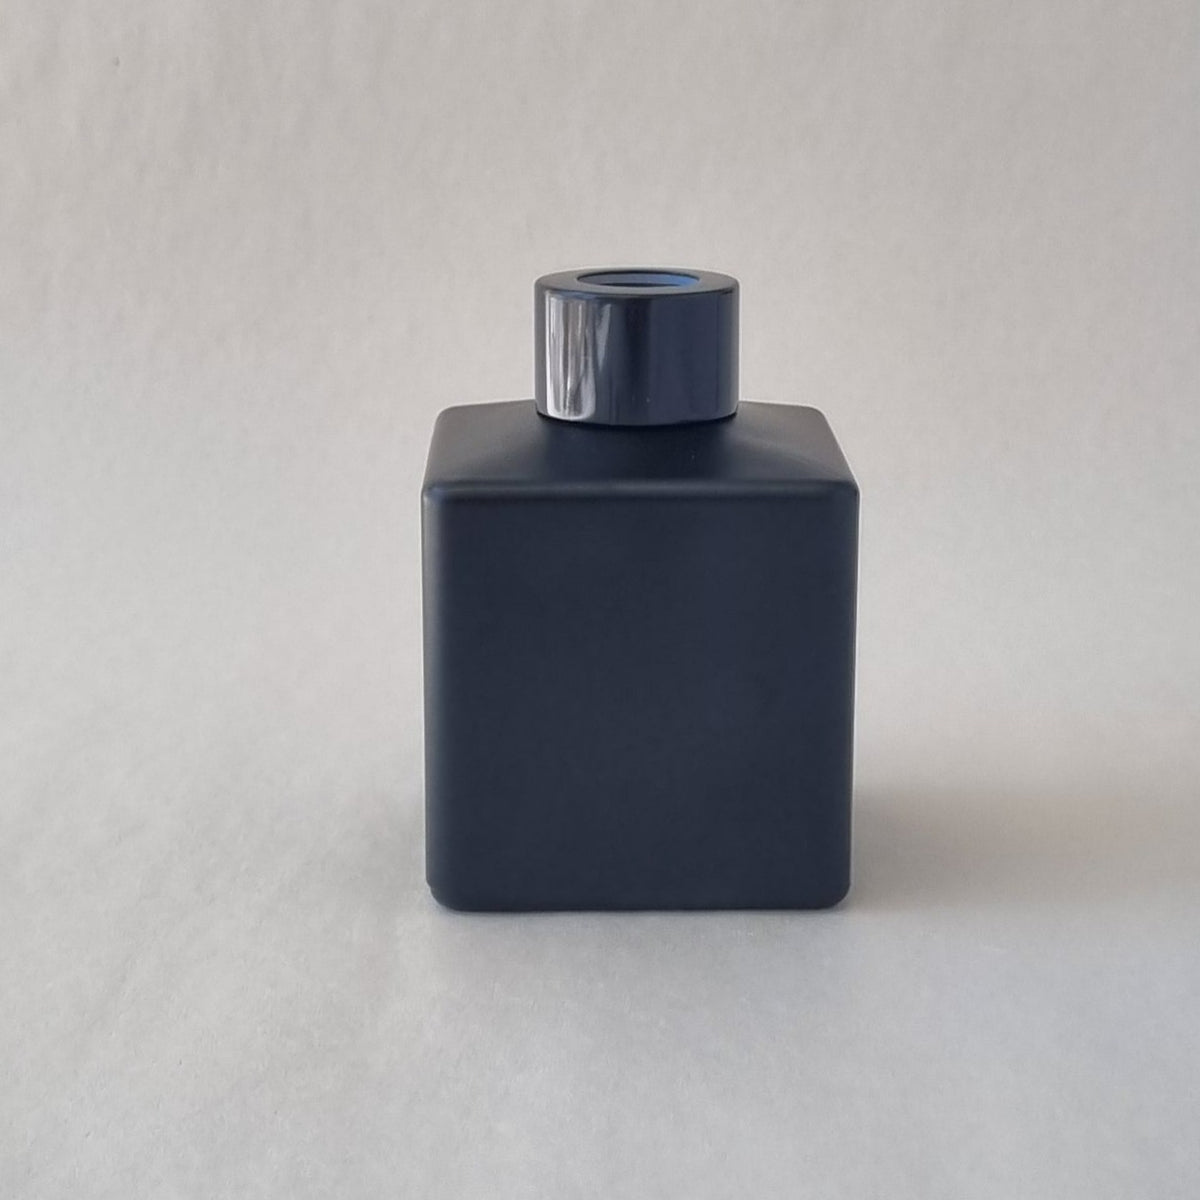 Diffuser Bottle - Square Matt Black 150ml- Black Lid-$3 each in box of 12